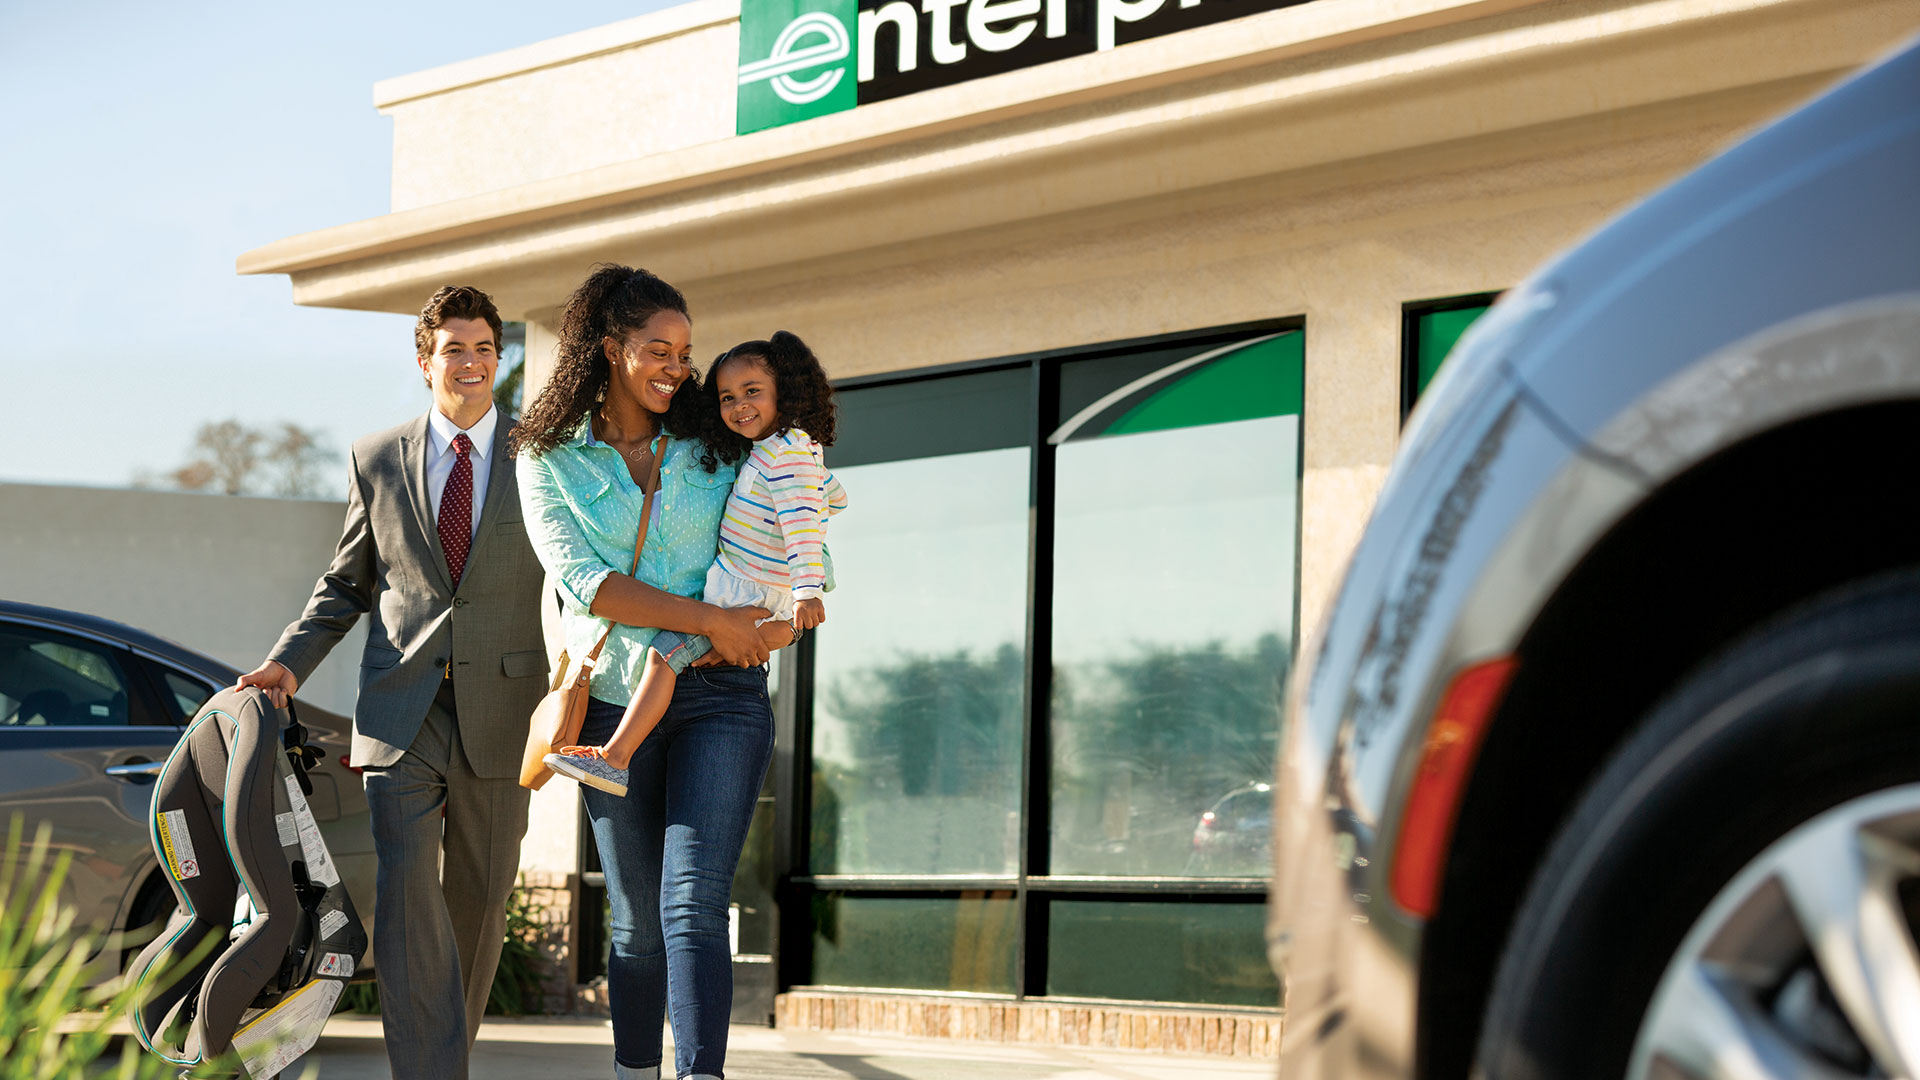 Enterprise Rent-A-Car FAQs